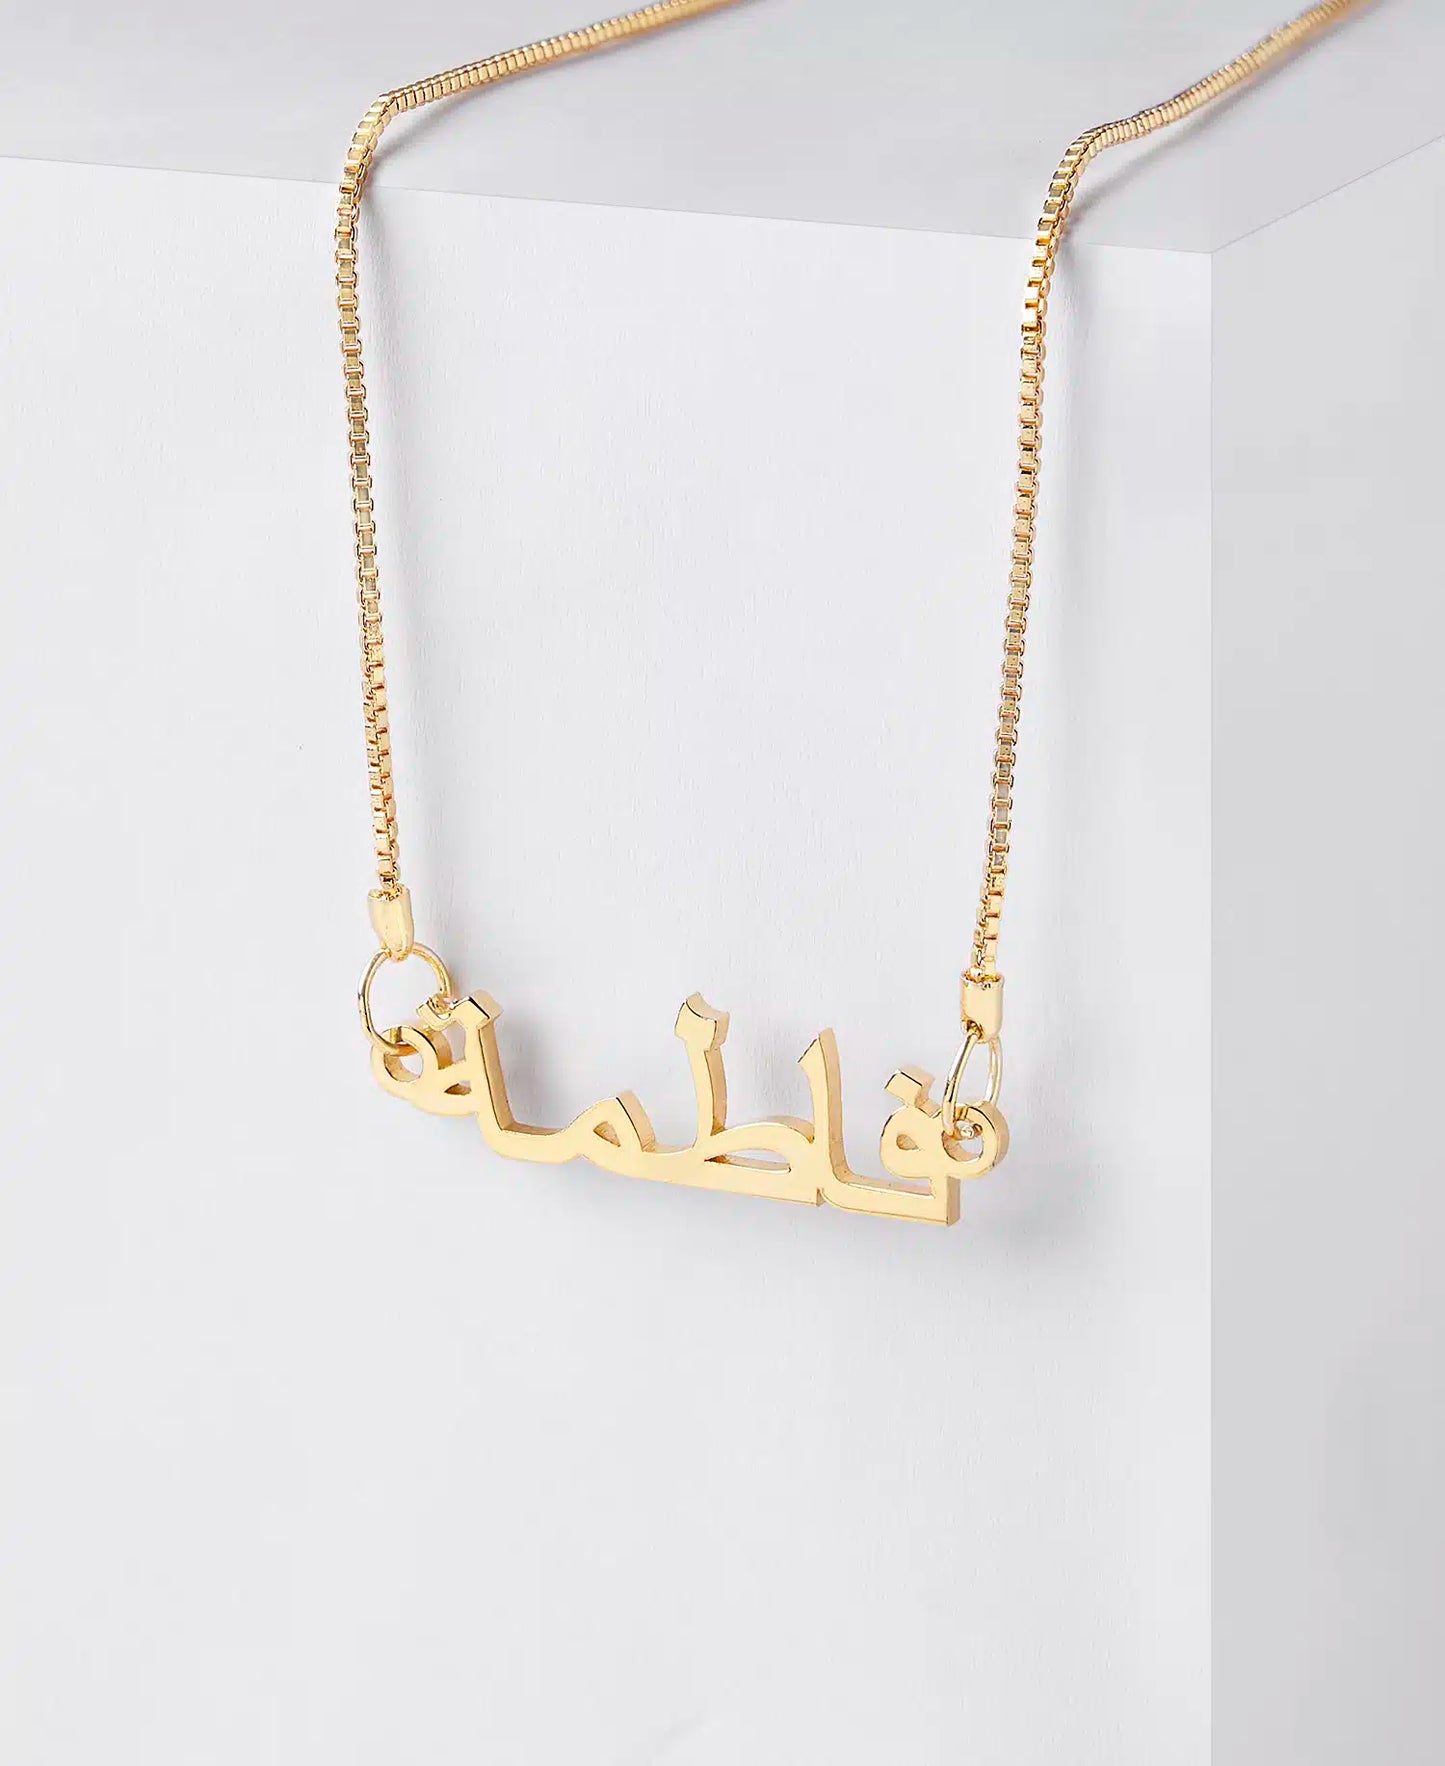 Personalised Arabic/Urdu Name Necklace